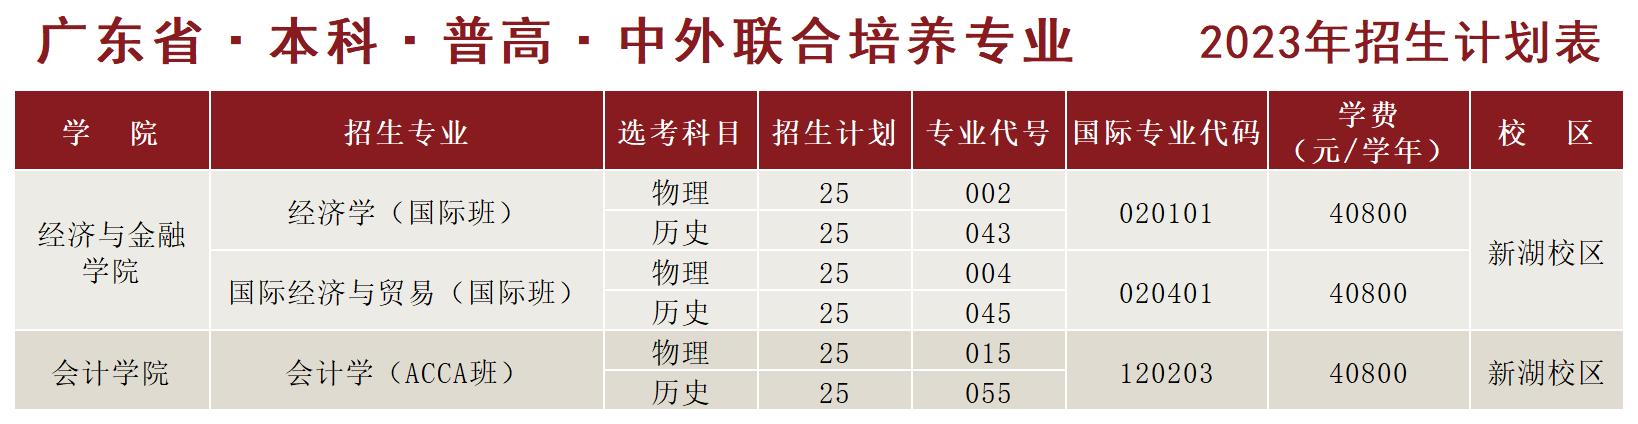 湛江科技学院－广东省本科普高中外联合培养专业2023年招生计划表